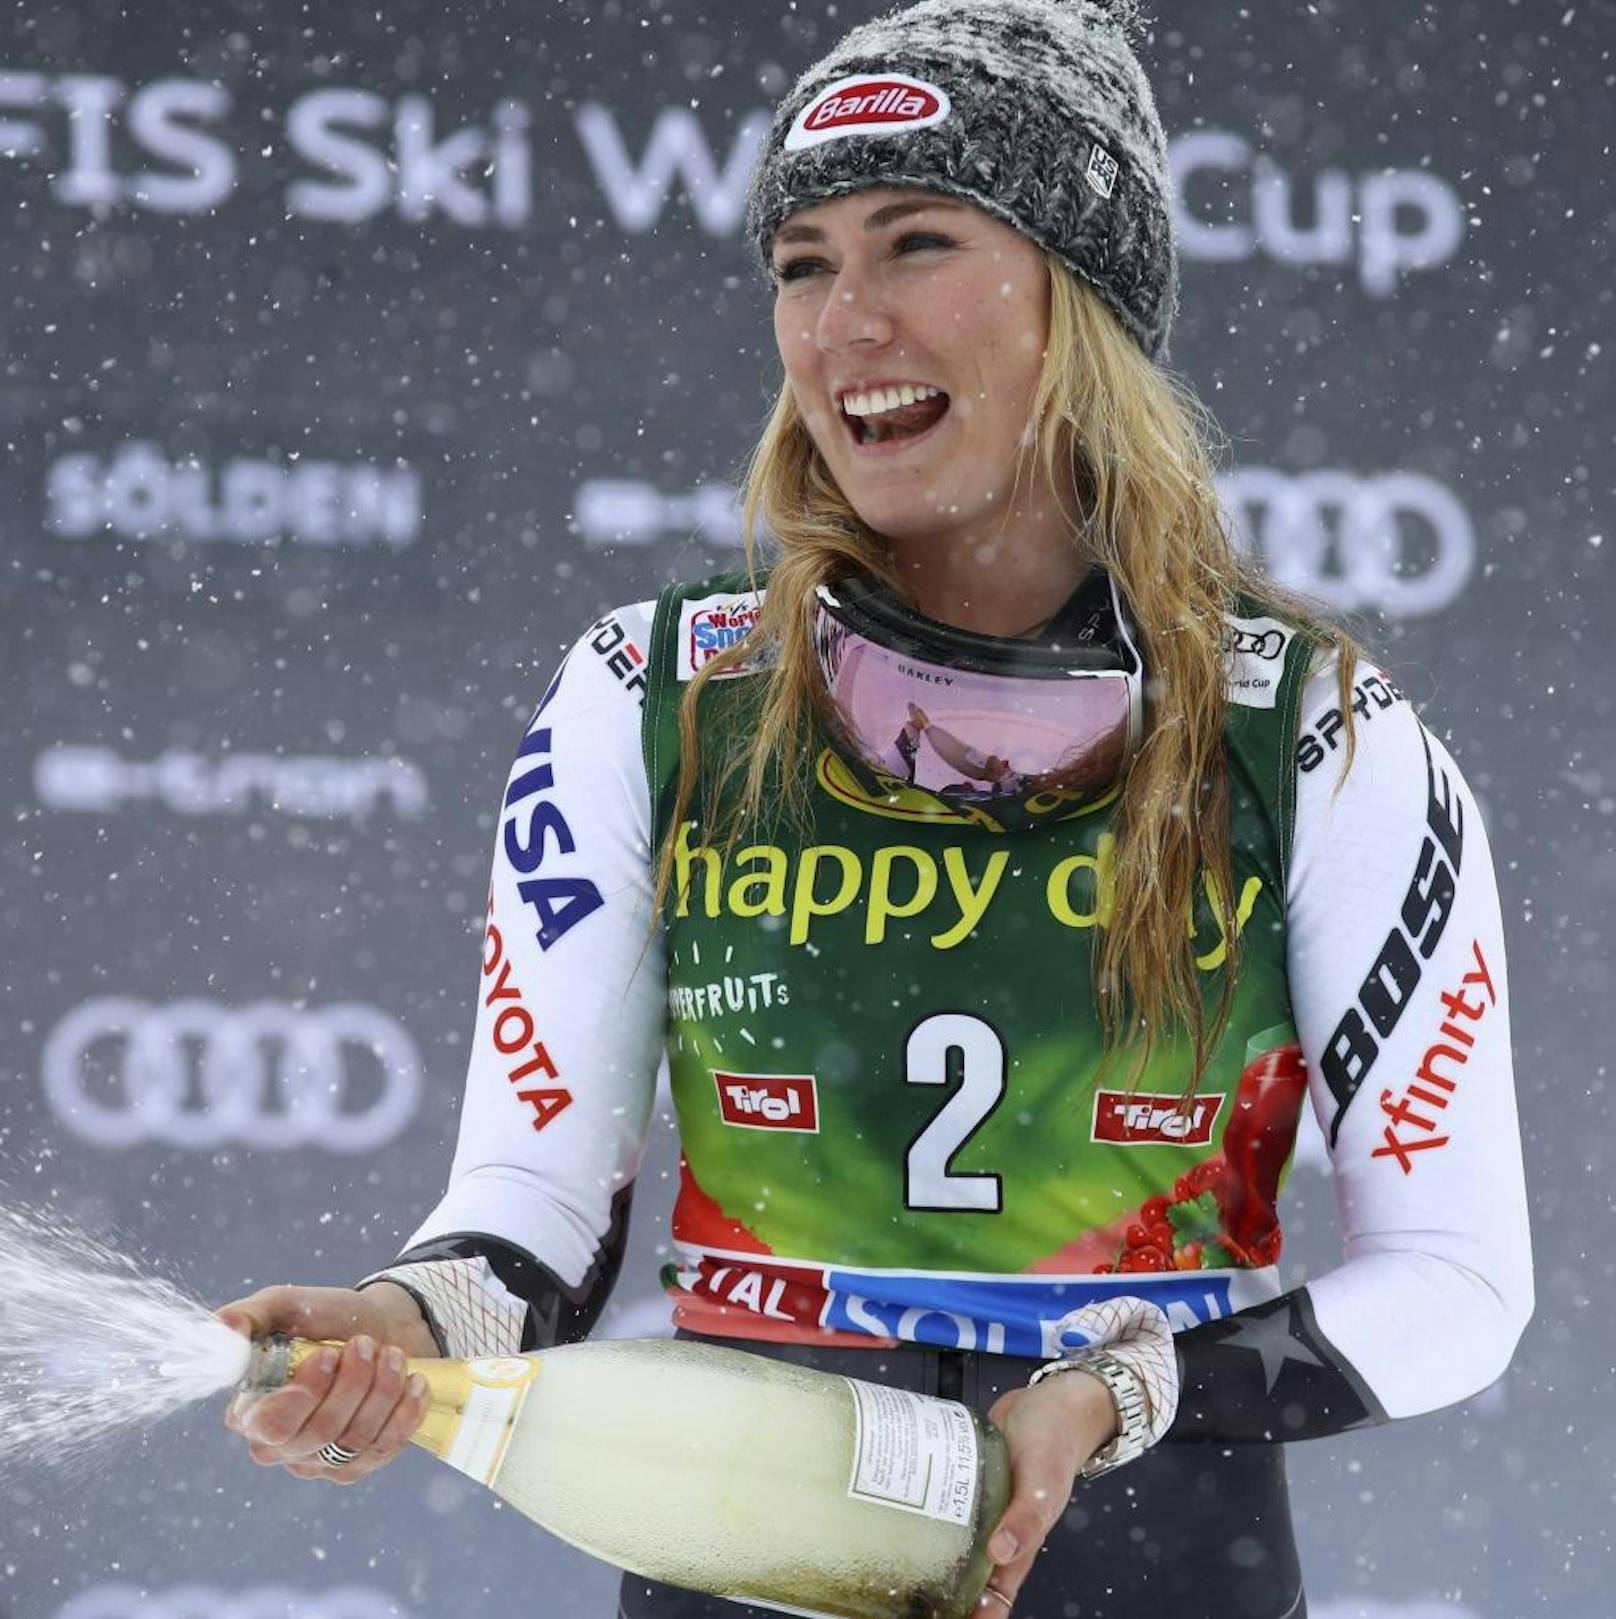 Den anschließenden Slalom am 25. November holte - wie könnte es anders sein - Mikaela Shiffrin, die ihren 34. Weltcup-Torlauf gewann. Damit war sie nur noch einen Triumph von der Bestmarke von Marlies Schild entfernt.

<b><i>Slalom, Killington (25.11.2018)</i></b>
1. Mikaela Shiffrin (US)
2. Petra Vlhova (Svk)
3. Frida Hansdotter (Swe)
<b>4. Bernadette Schild</b>